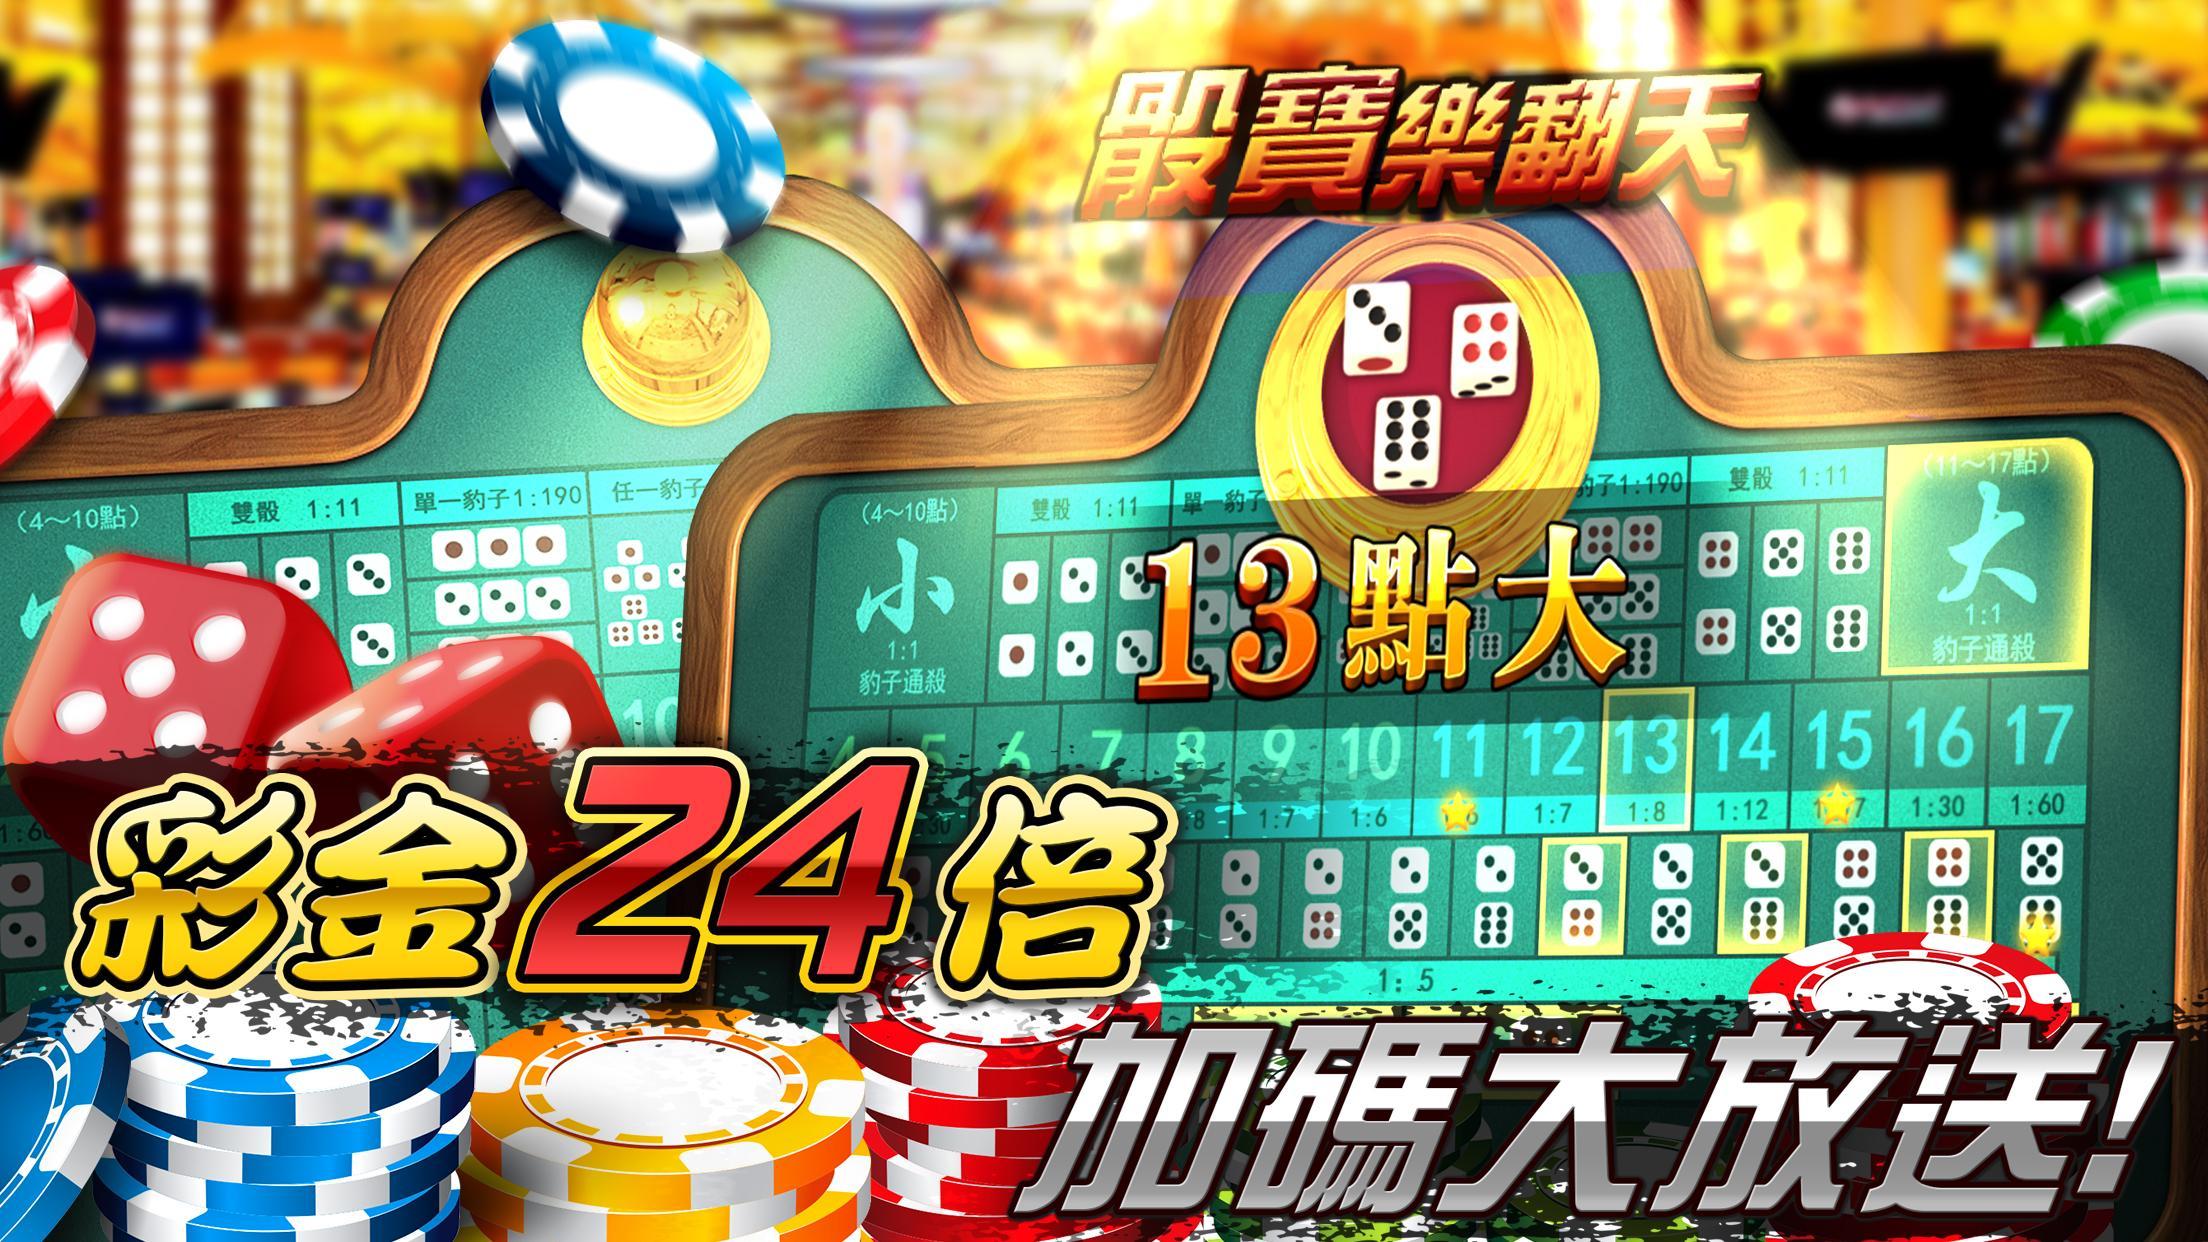 金G168 Casino -老虎機,7PK撲克,小瑪莉,骰寶 1.1.23 Screenshot 2